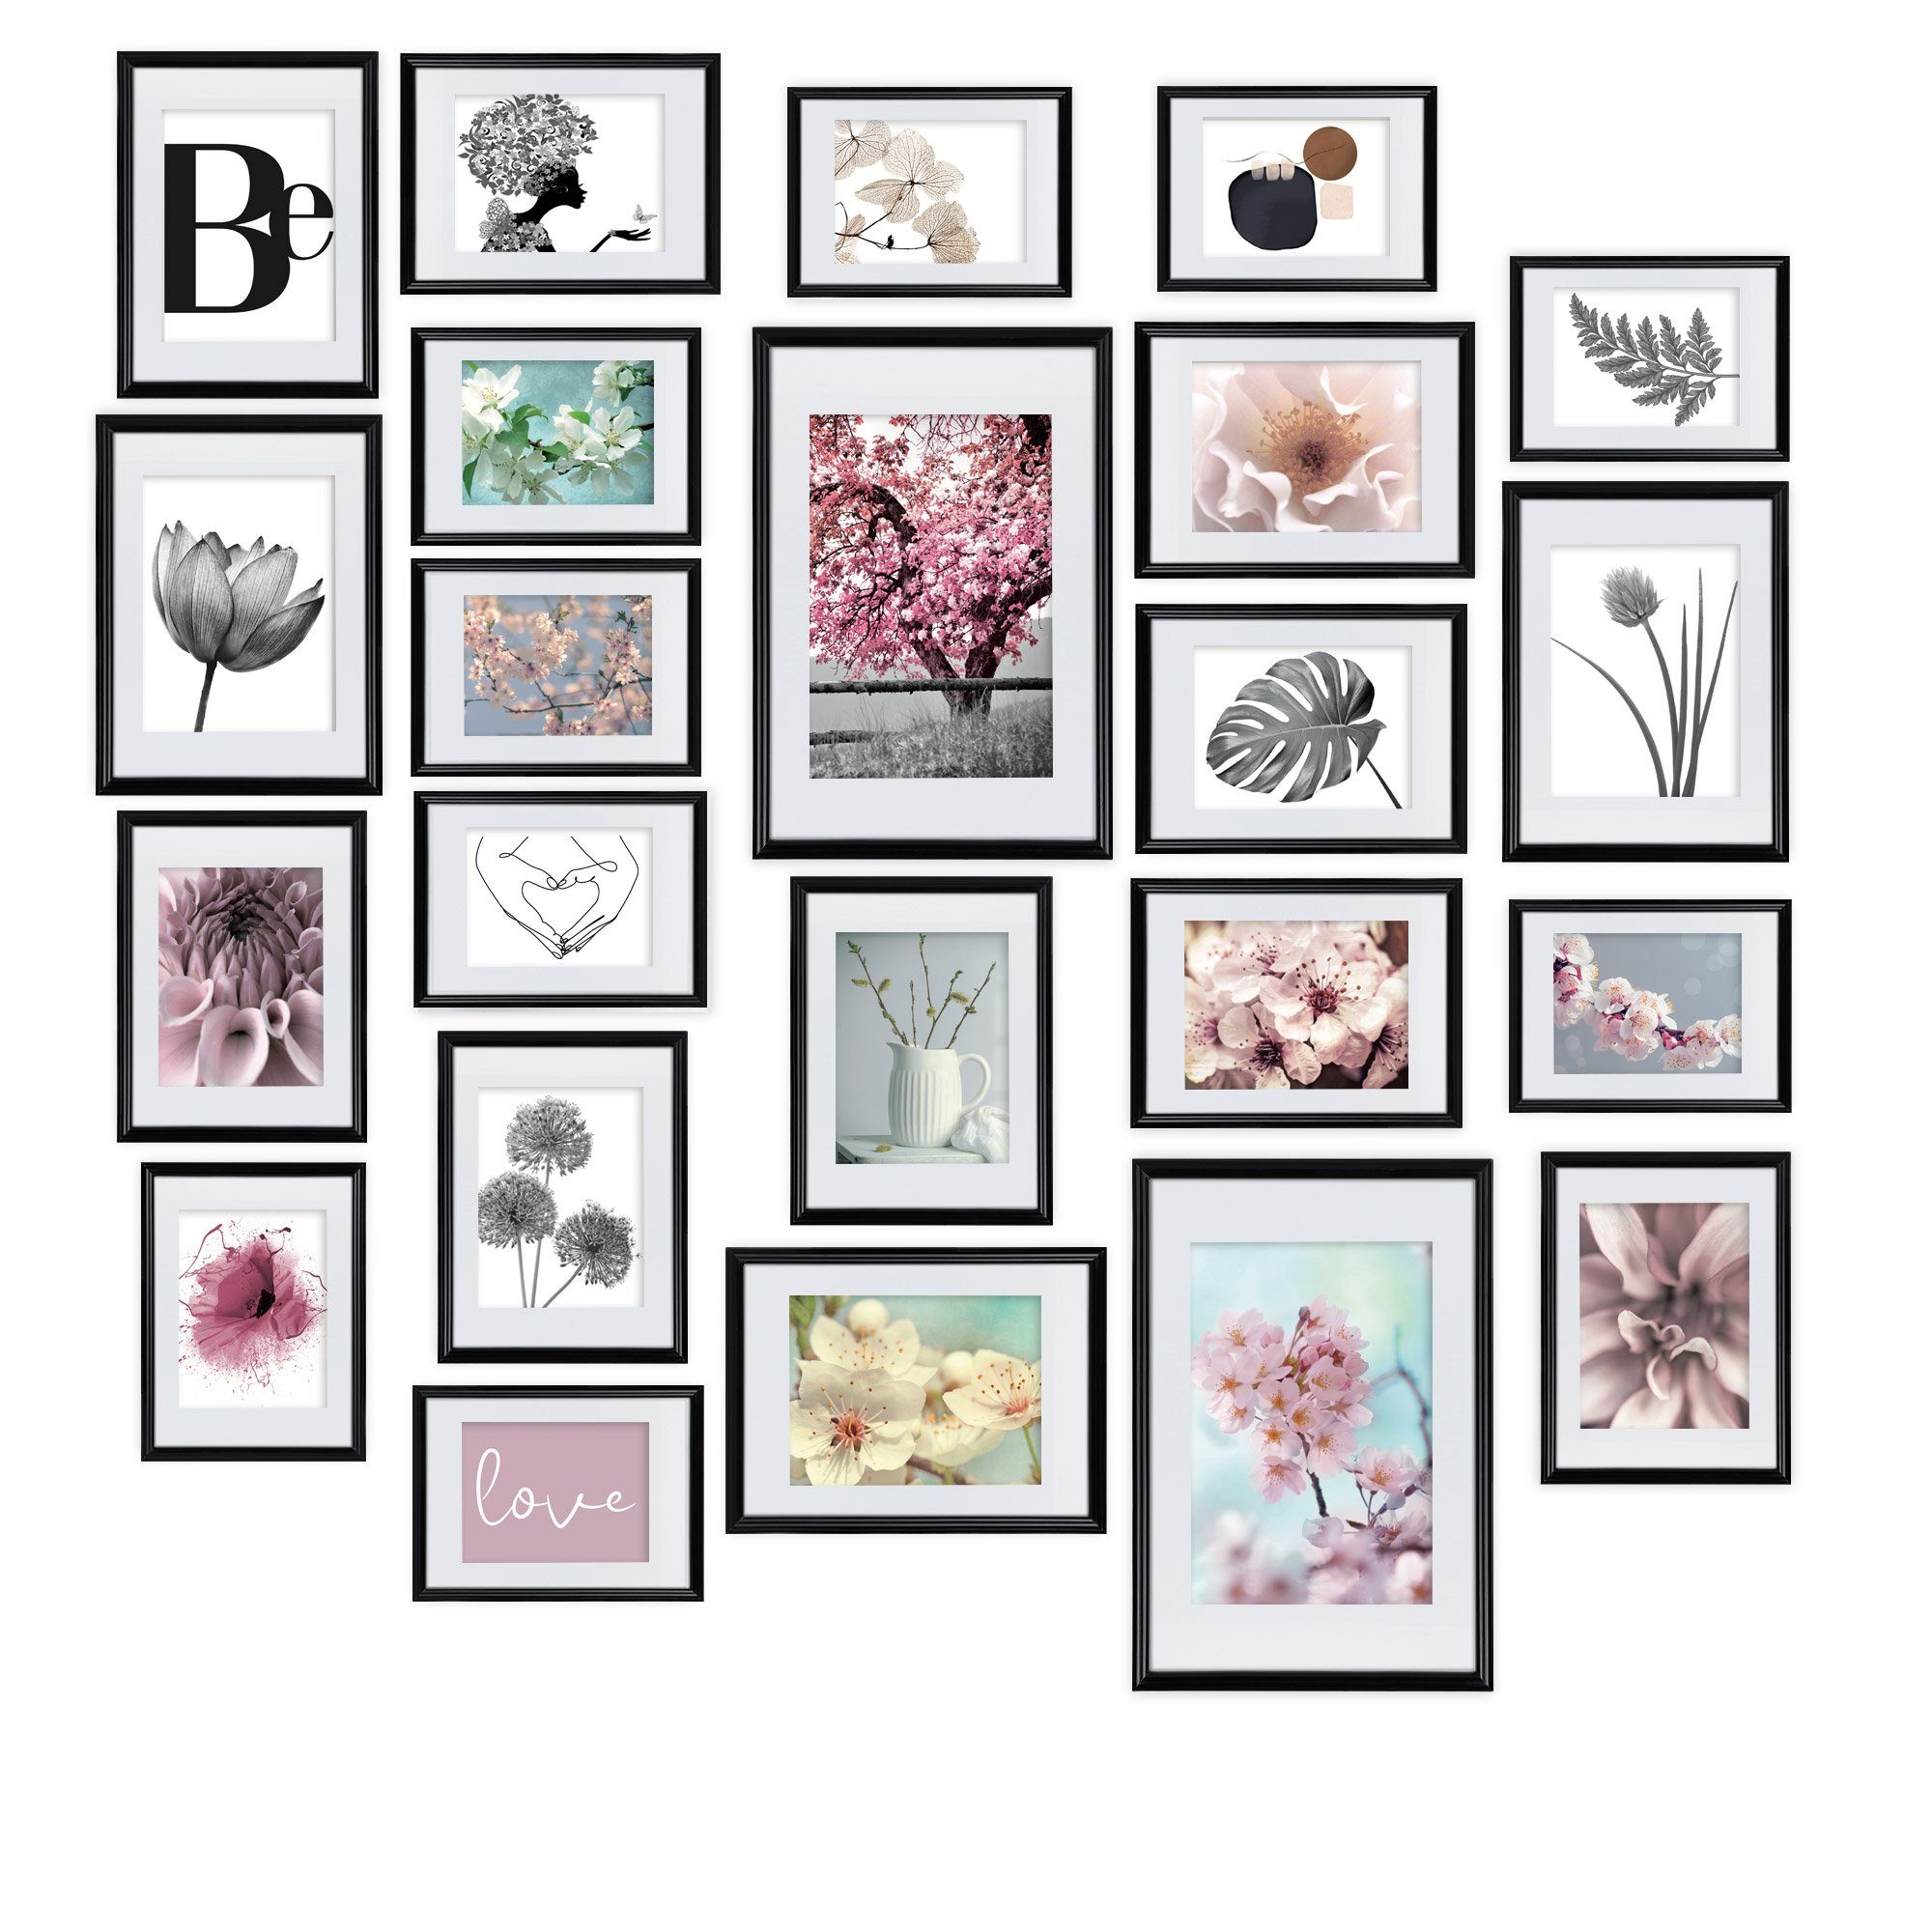 bomoe Bilderrahmen Blossom, 24er Fotowand Passepartout Collage Set mit Fotorahmen Schwarz